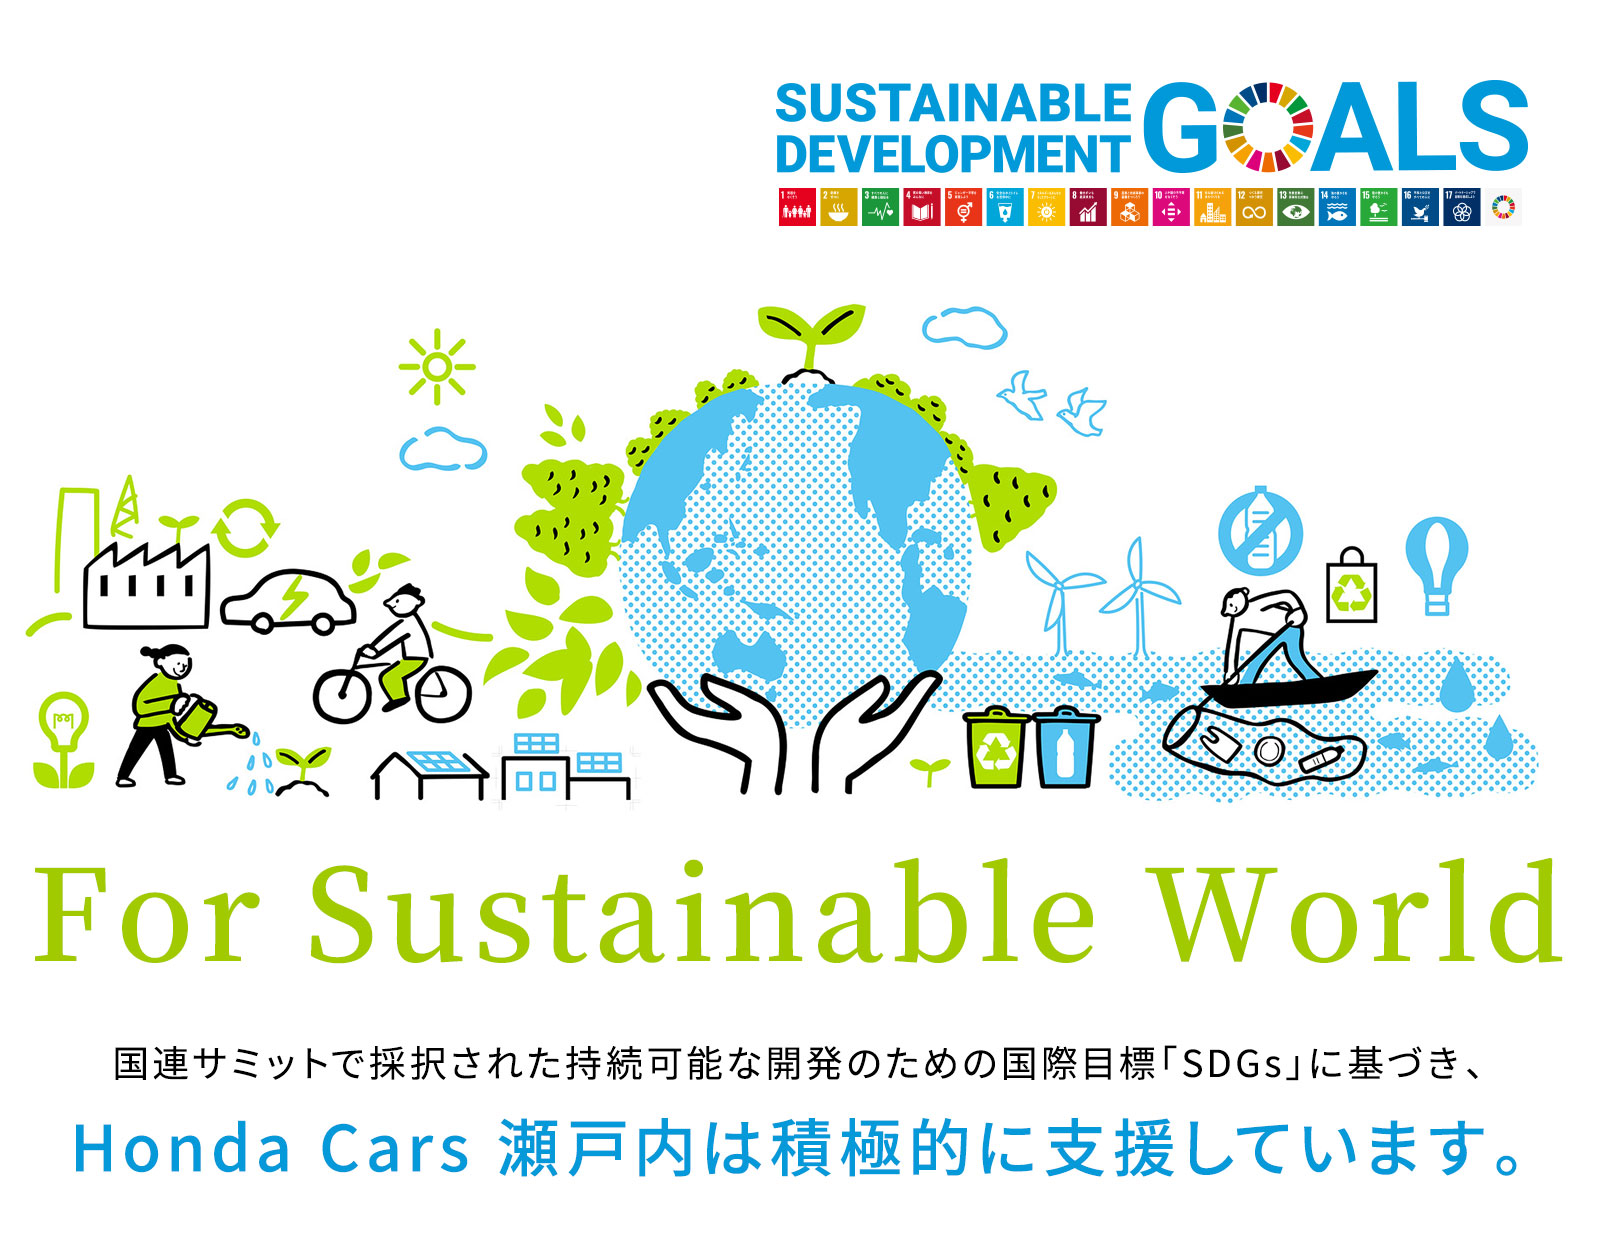 For Sustainable World 国連サミットで採択された持続可能な開発のための国際目標「SDGs」に基づき、ホンダカーズ瀬戸内は積極的に支援しています。